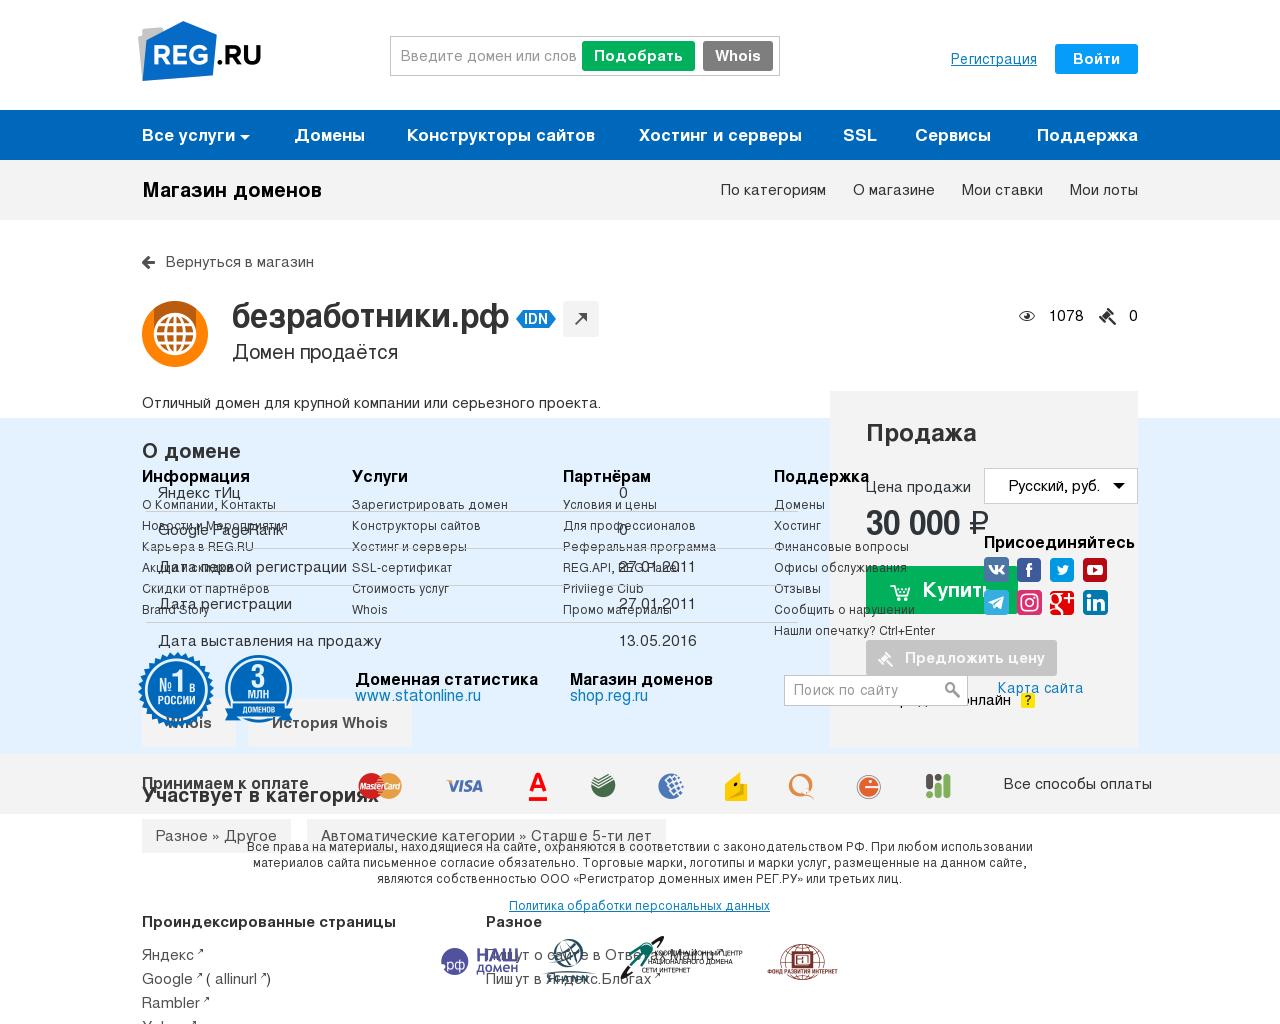 Изображение сайта безработники.рф в разрешении 1280x1024